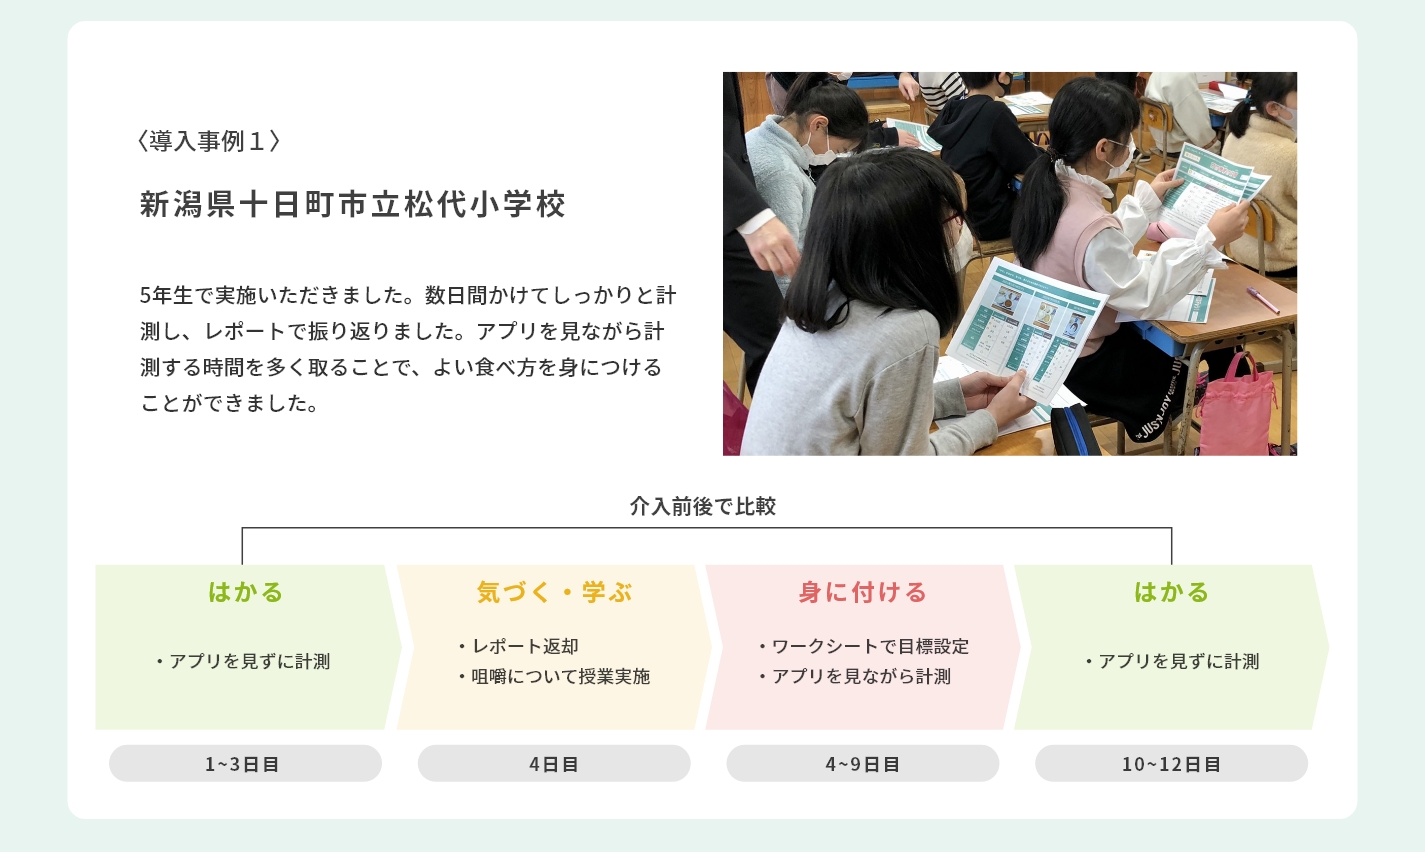 導入事例1新潟県十日町市松代小学校食育授業の一環として実施